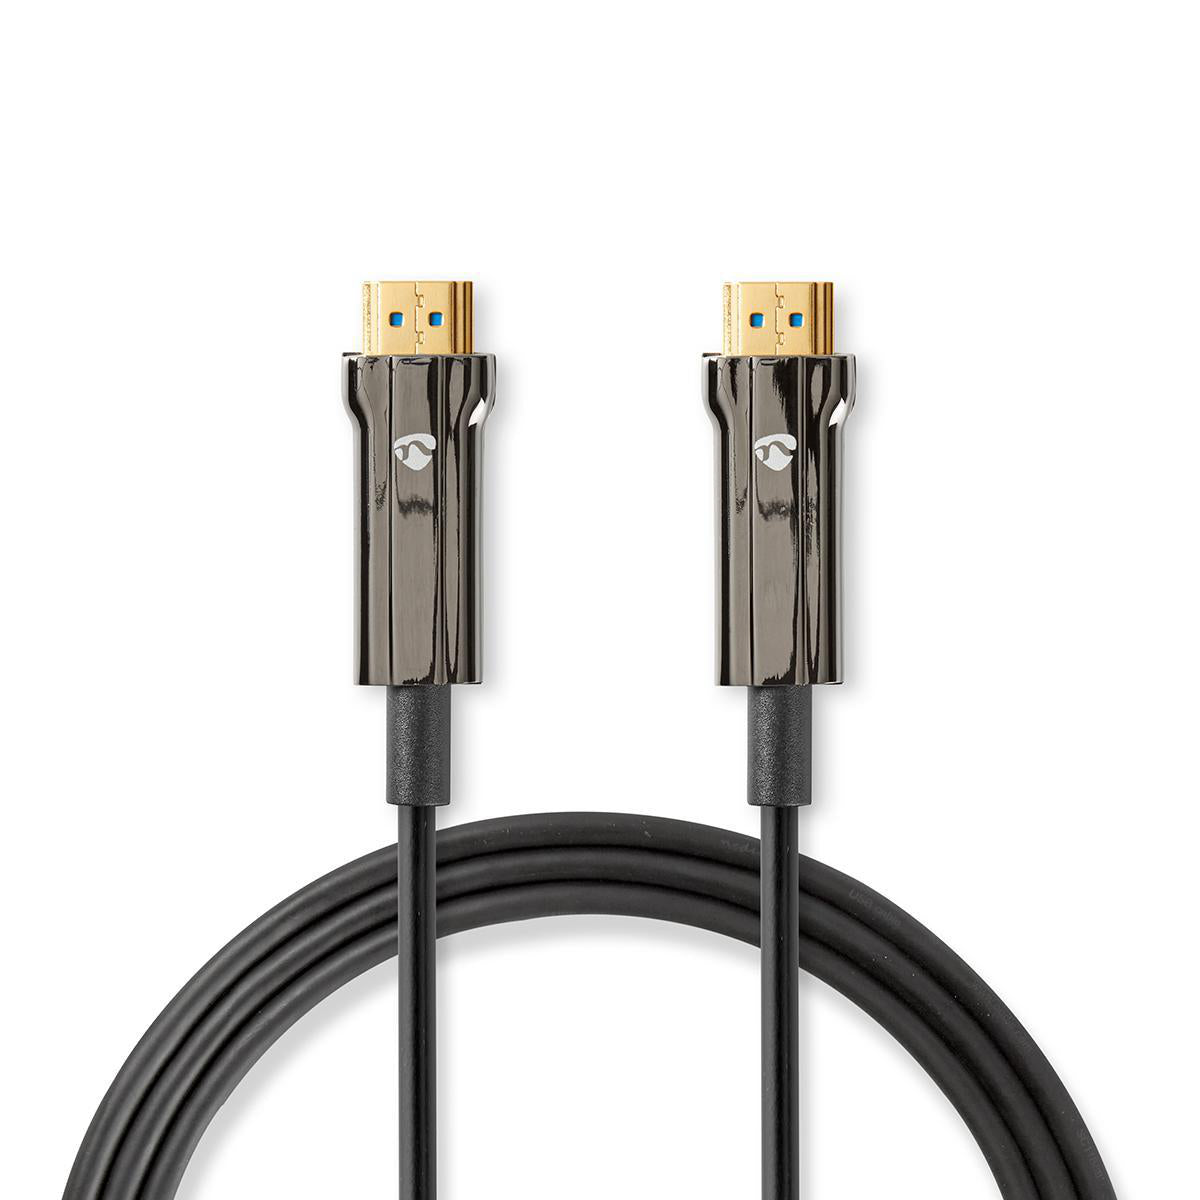 Aktive Optische Ultra High Speed HDMI-Kabel mit Ethernet | HDMI™ Stecker | HDMI™ Stecker | 8K@60Hz | 48 Gbps | 20.0 m | Rund | PVC | Schwarz | Kartonverpackung